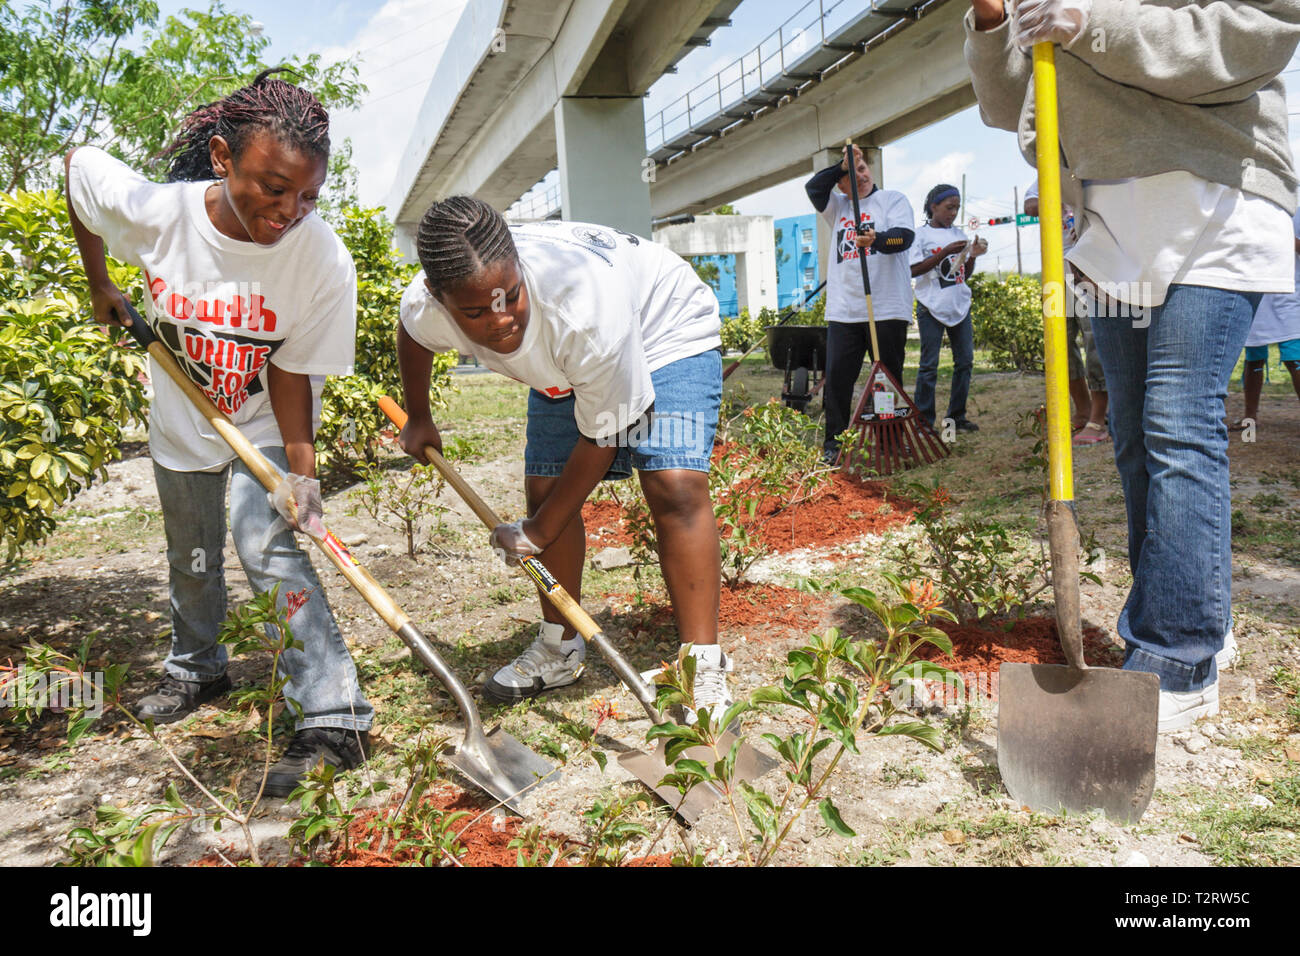 Miami Florida, Overtown, Peace Park, Global Youth Service Day, Baumbepflanzung, Freiwillige Freiwillige ehrenamtlich arbeiten Arbeiter, Teamarbeit zusammen Stockfoto